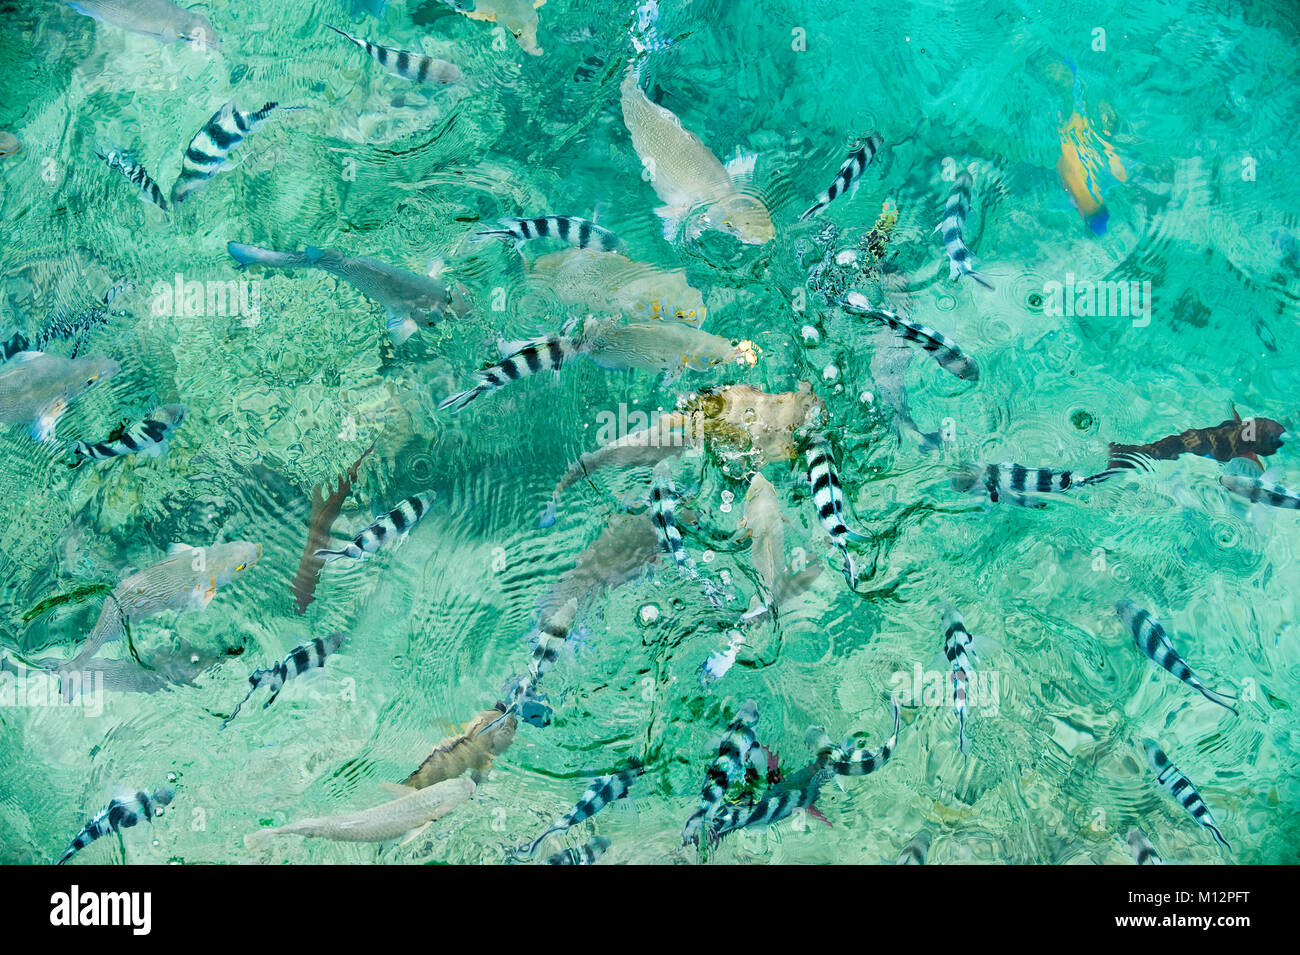 Eine Schule der Dascyllus Fisch aus Royal Davui Island, Fidschi. Dascyllus hängen von Korallenriffen, die in Hülle und Fülle um Fidschi. Stockfoto